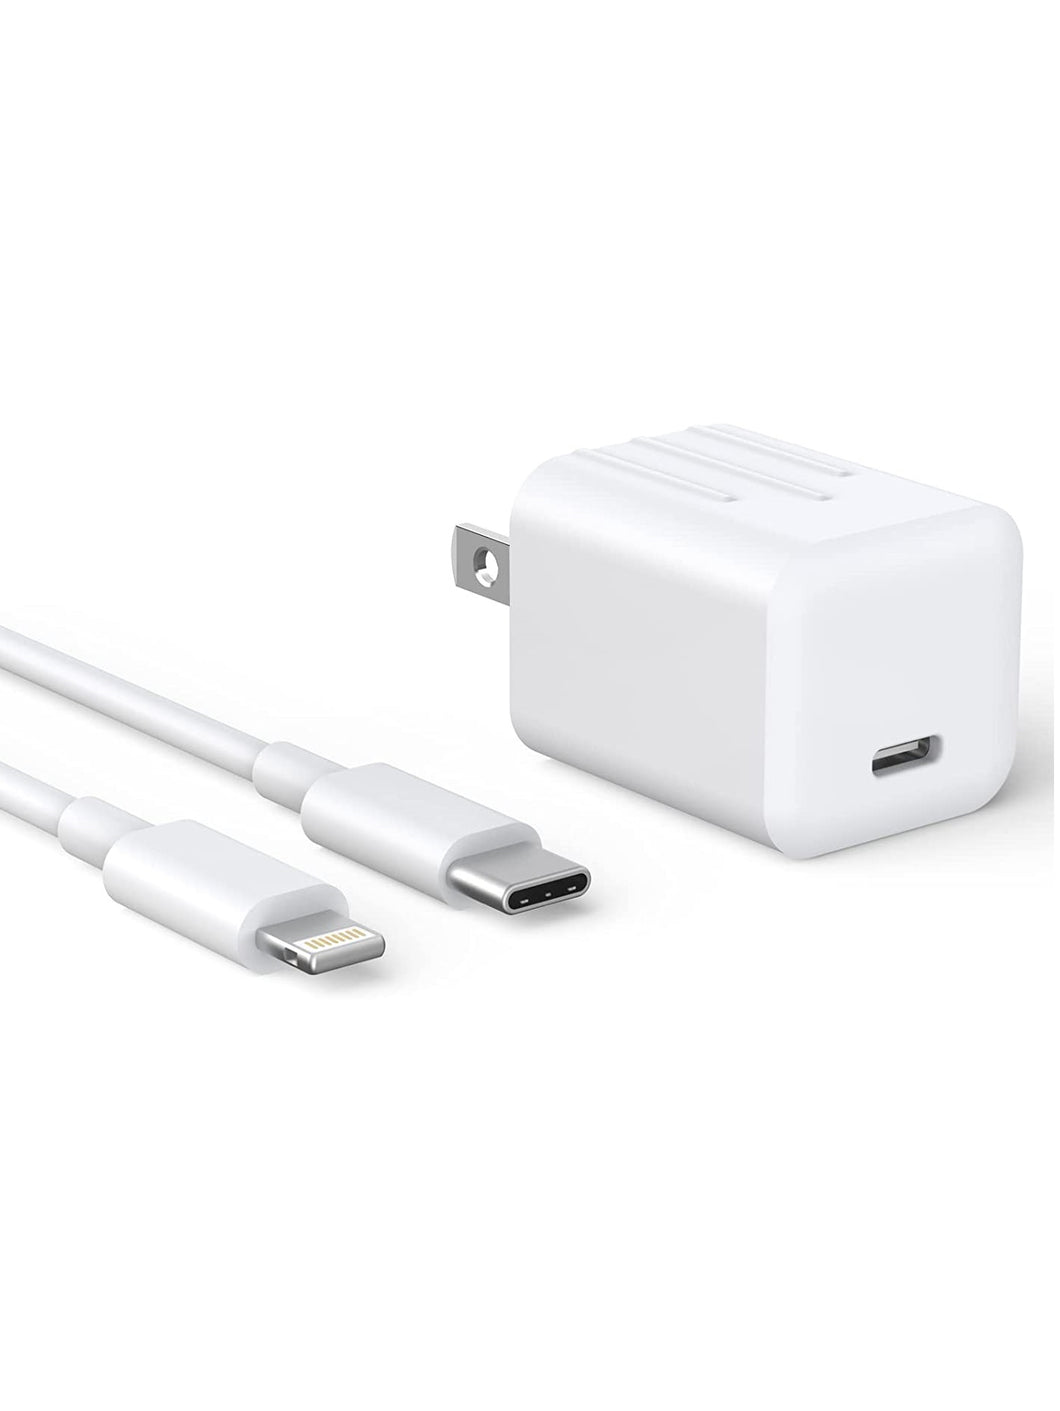 Cargador rápido para iPhone, [certificado Apple MFi] 20 W, tipo C, con cable USB-C a Lightning de 6 pies.✅️